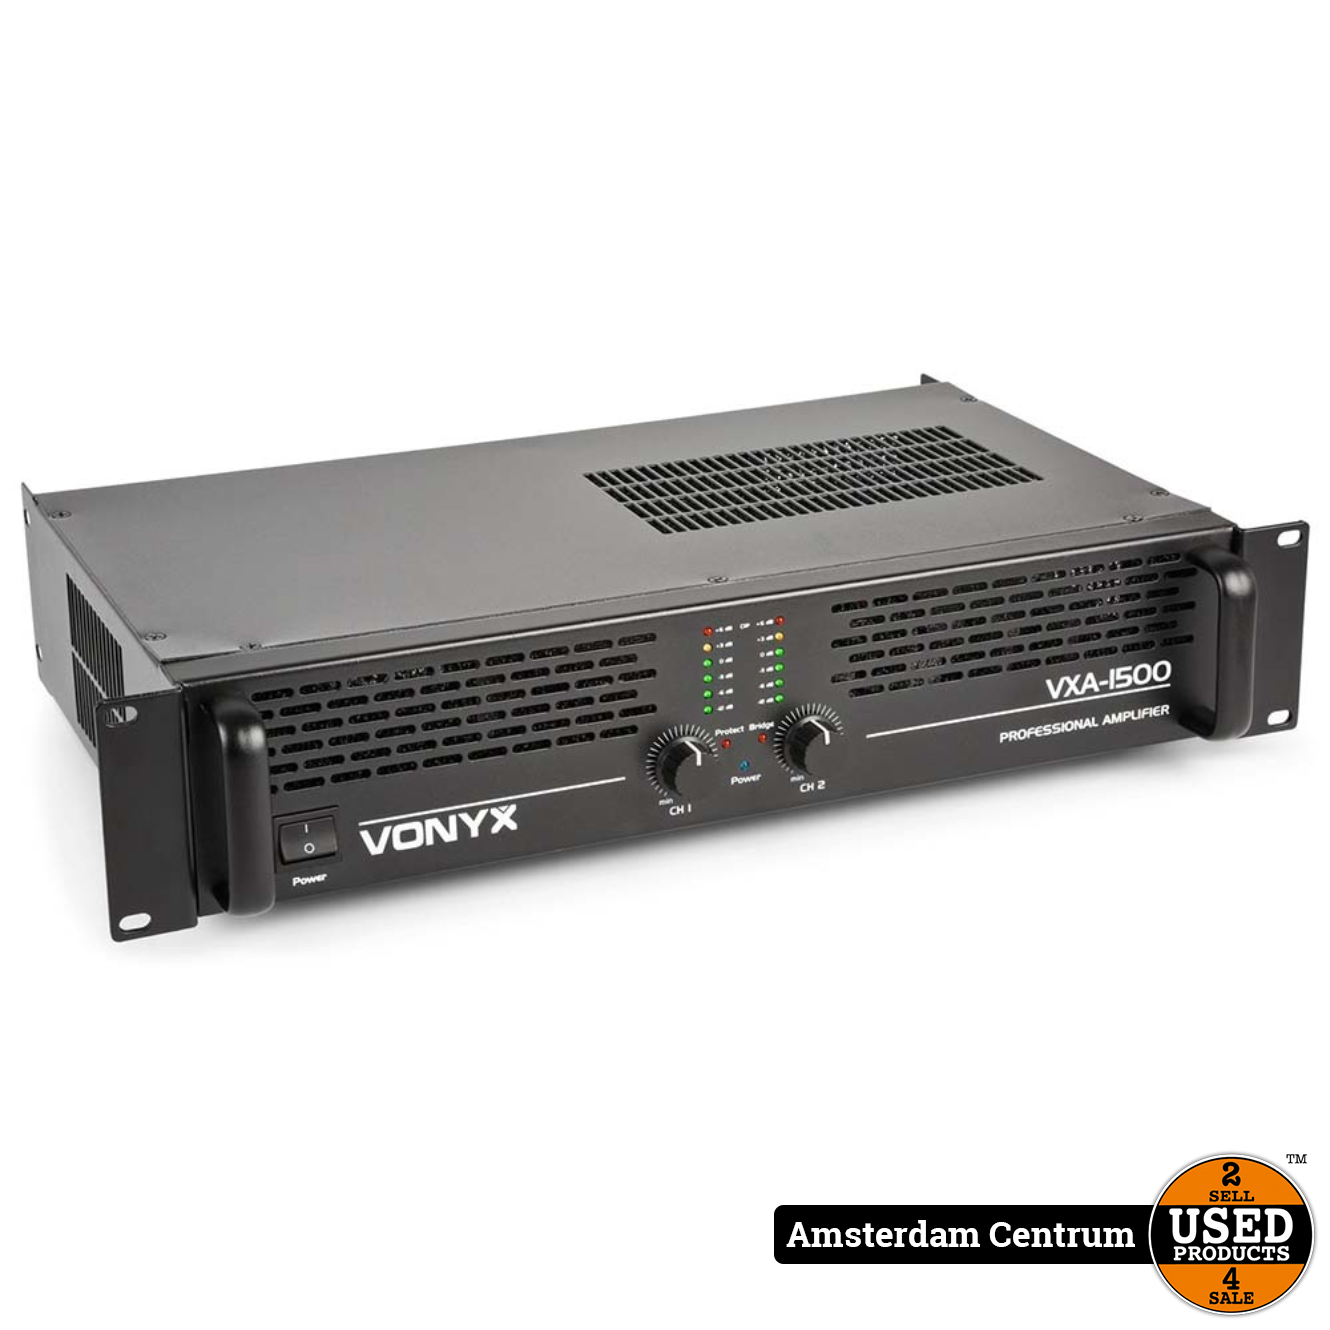 Vonyx VXA-1500 II versterker - Products Amsterdam Centrum